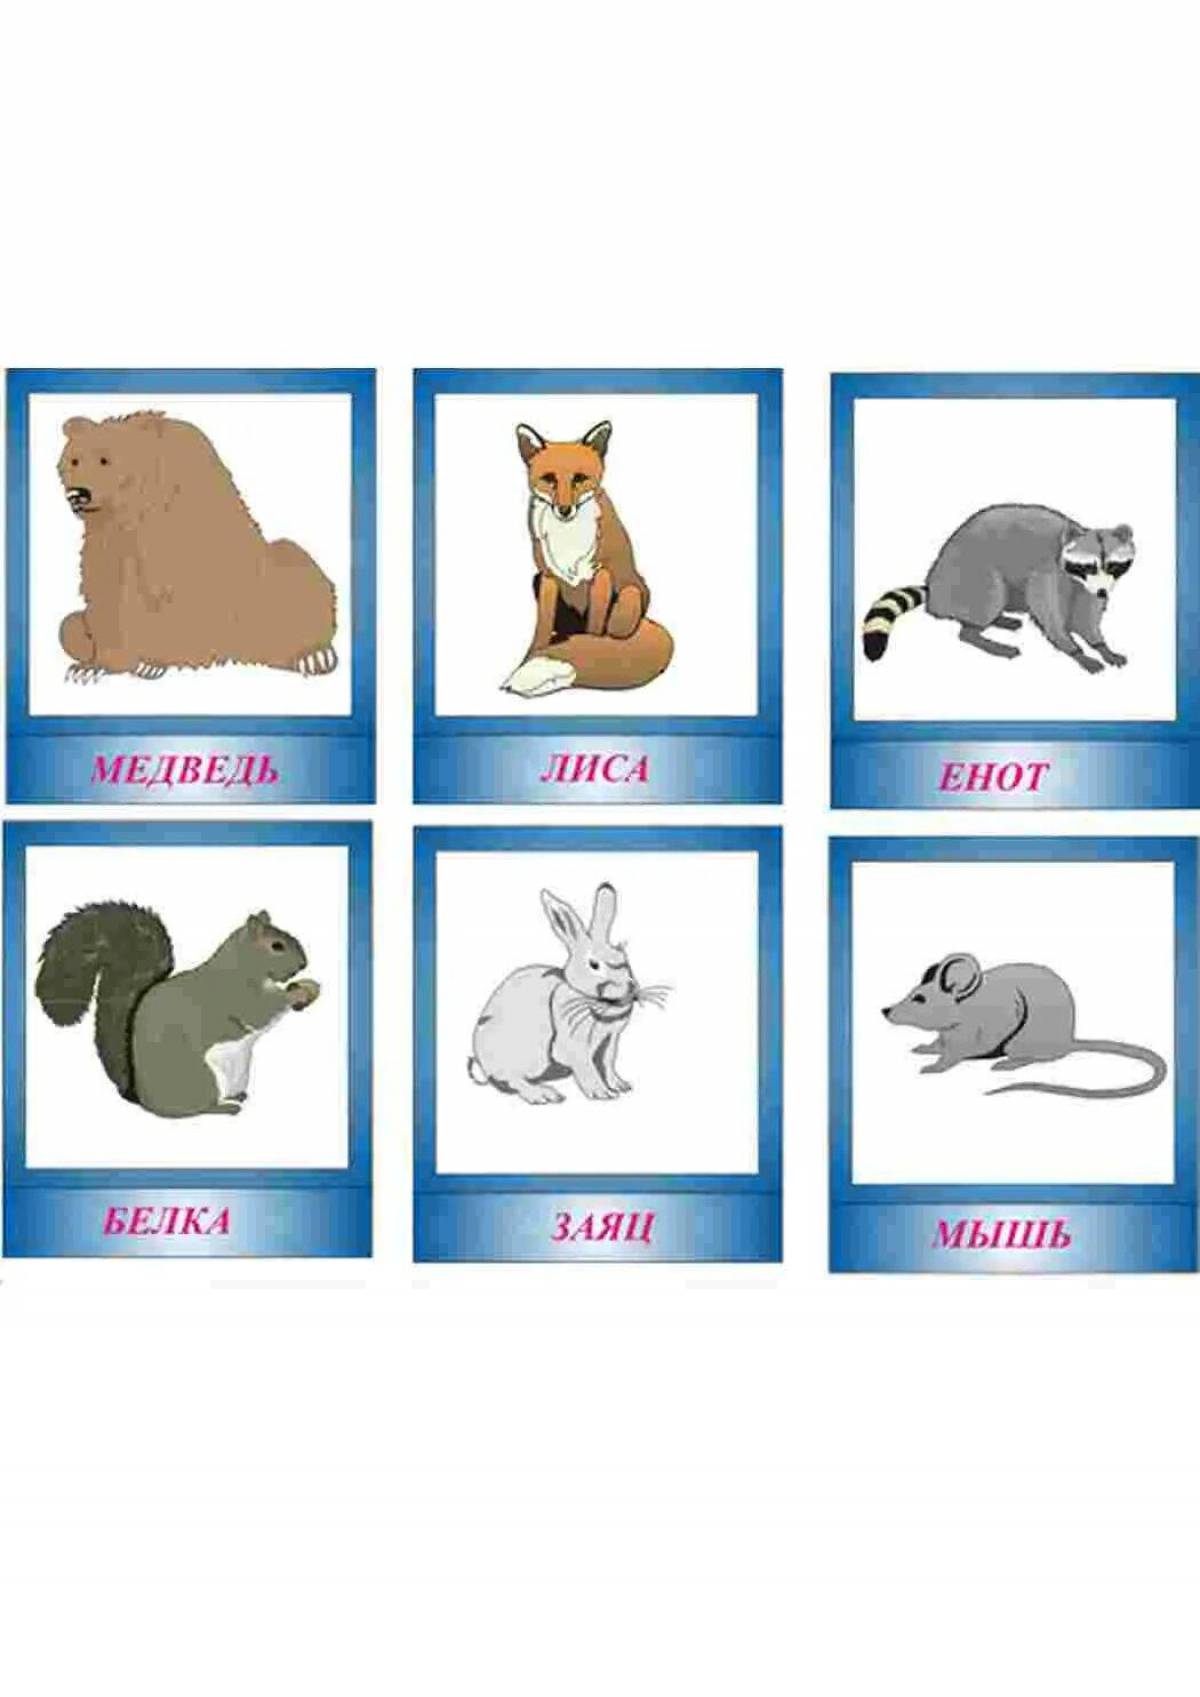 Собака лиса медведь. Карточки диких животных для детей. Дикие животные карточки для детей. Карточки Дикие животные для дошкольников. Карточки с изображением зайца.